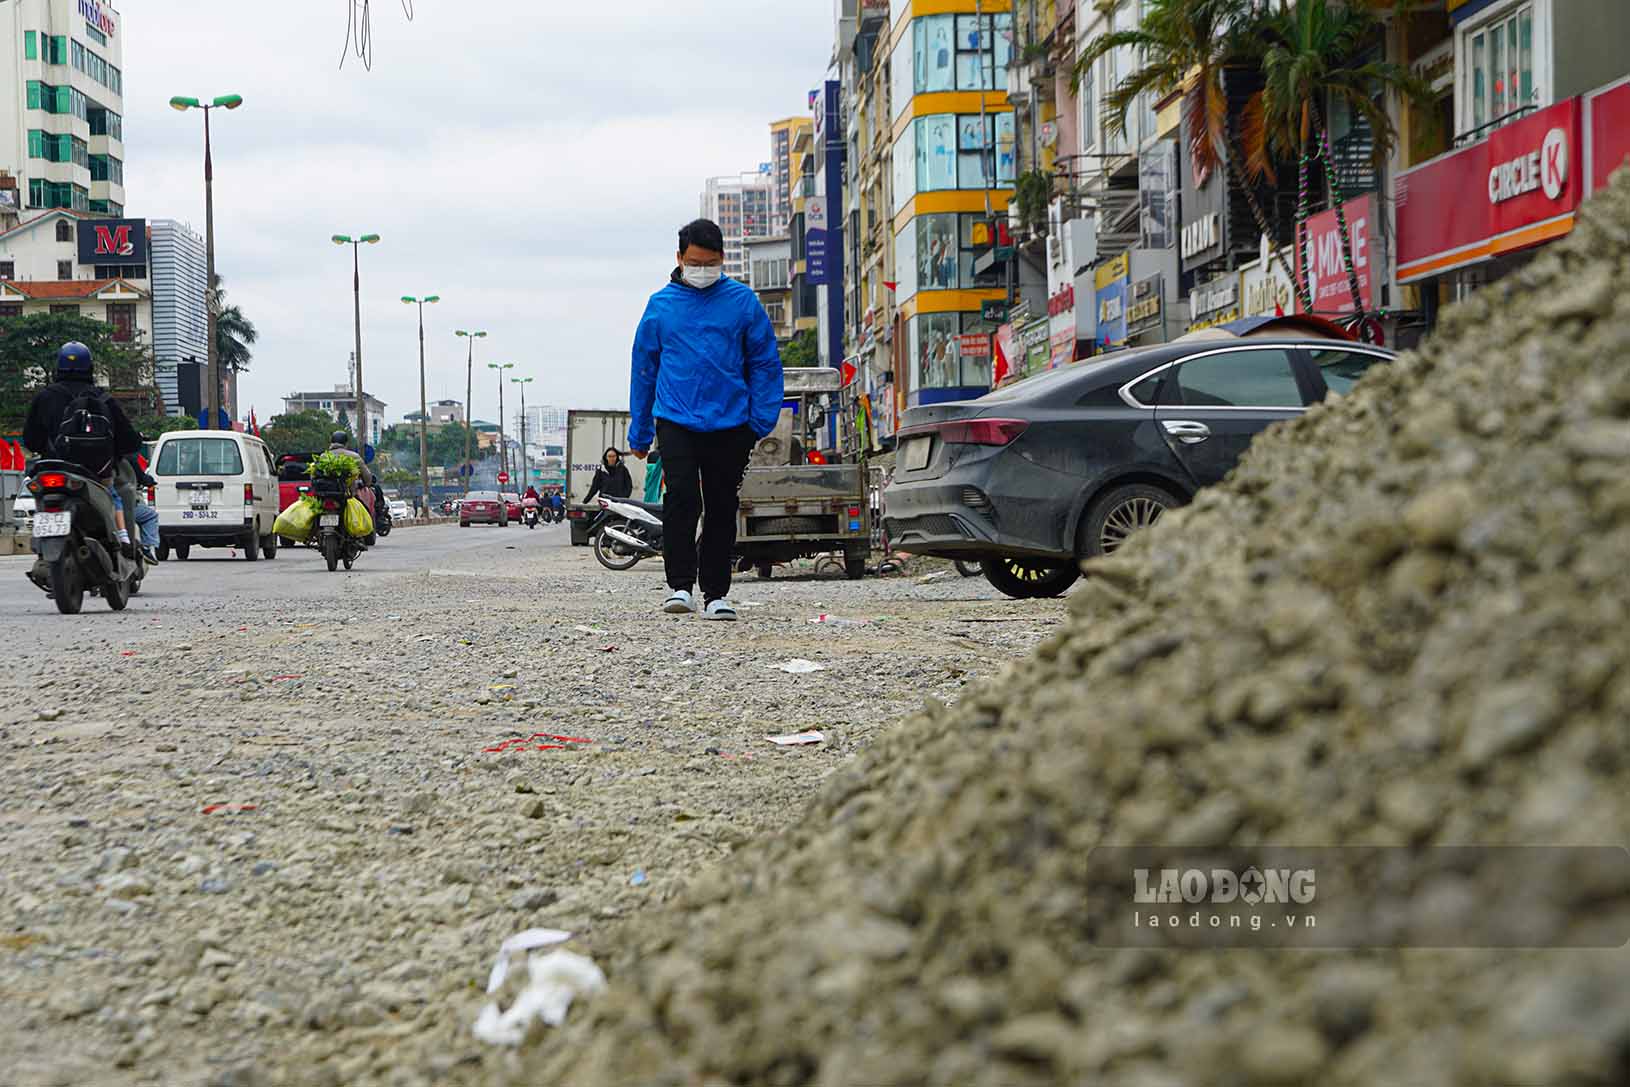 Trong khi đó, tại khu vực đường Kim Đồng, chỉ có lác đác vài công nhân đang thi công các hạng mục nhỏ lẻ, không thường xuyên hoạt động.